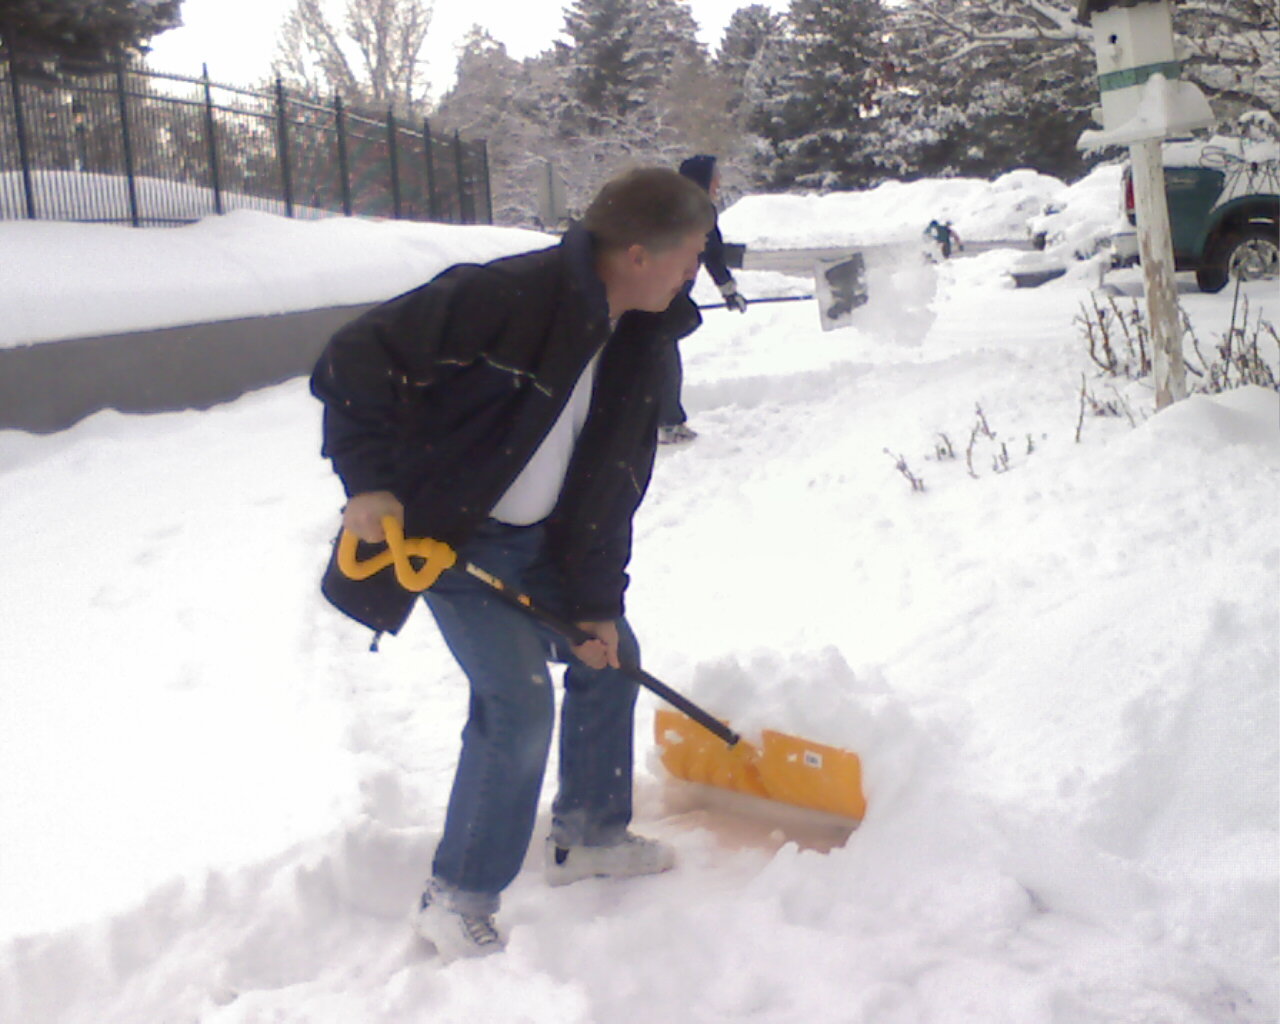 [Bill+snow+shovel.jpg]